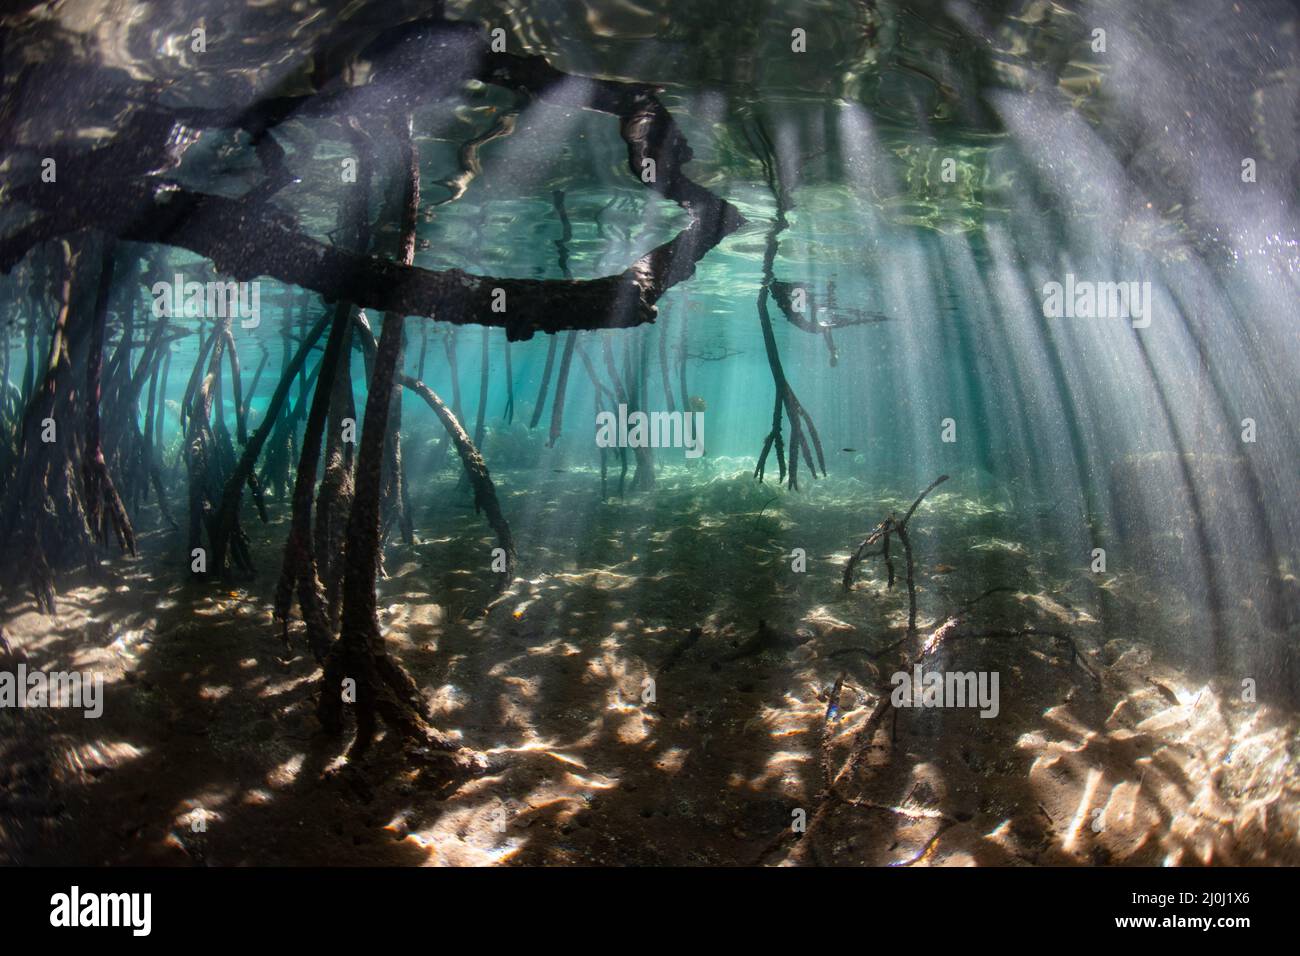 La luce del sole pierce il baldacchino di una foresta di mangrovie in Raja Ampat, Indonesia. Mangrovie servono come vivai vitali per molte specie di creature della barriera corallina. Foto Stock